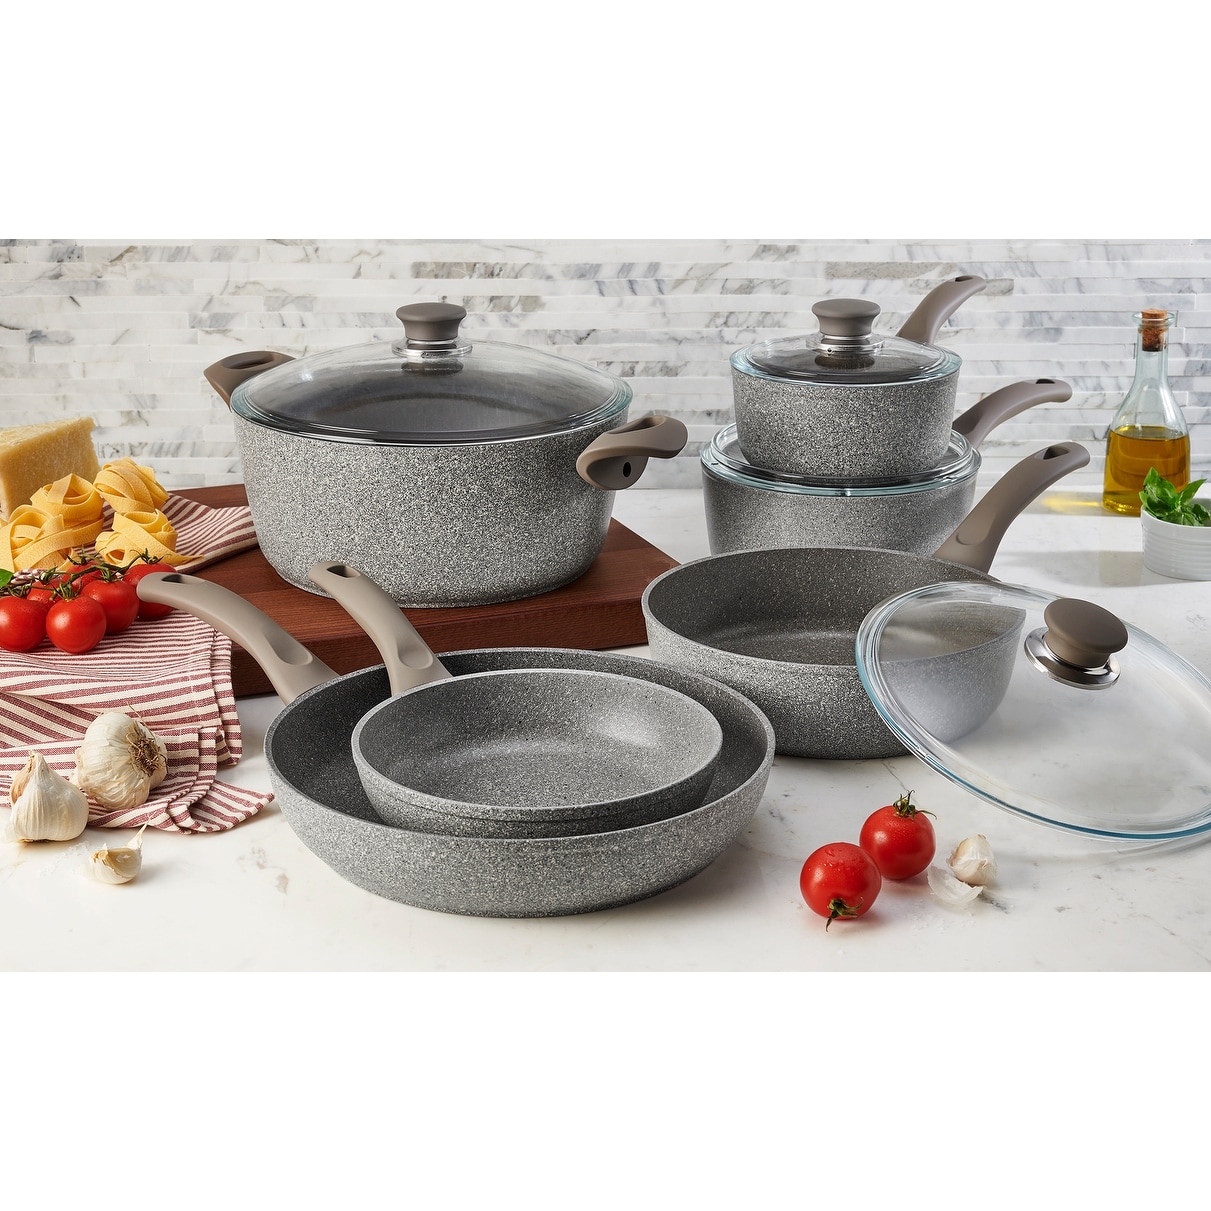 10-Piece Nonstick Cookware Set, Scratch-Resistant, Granite-coated